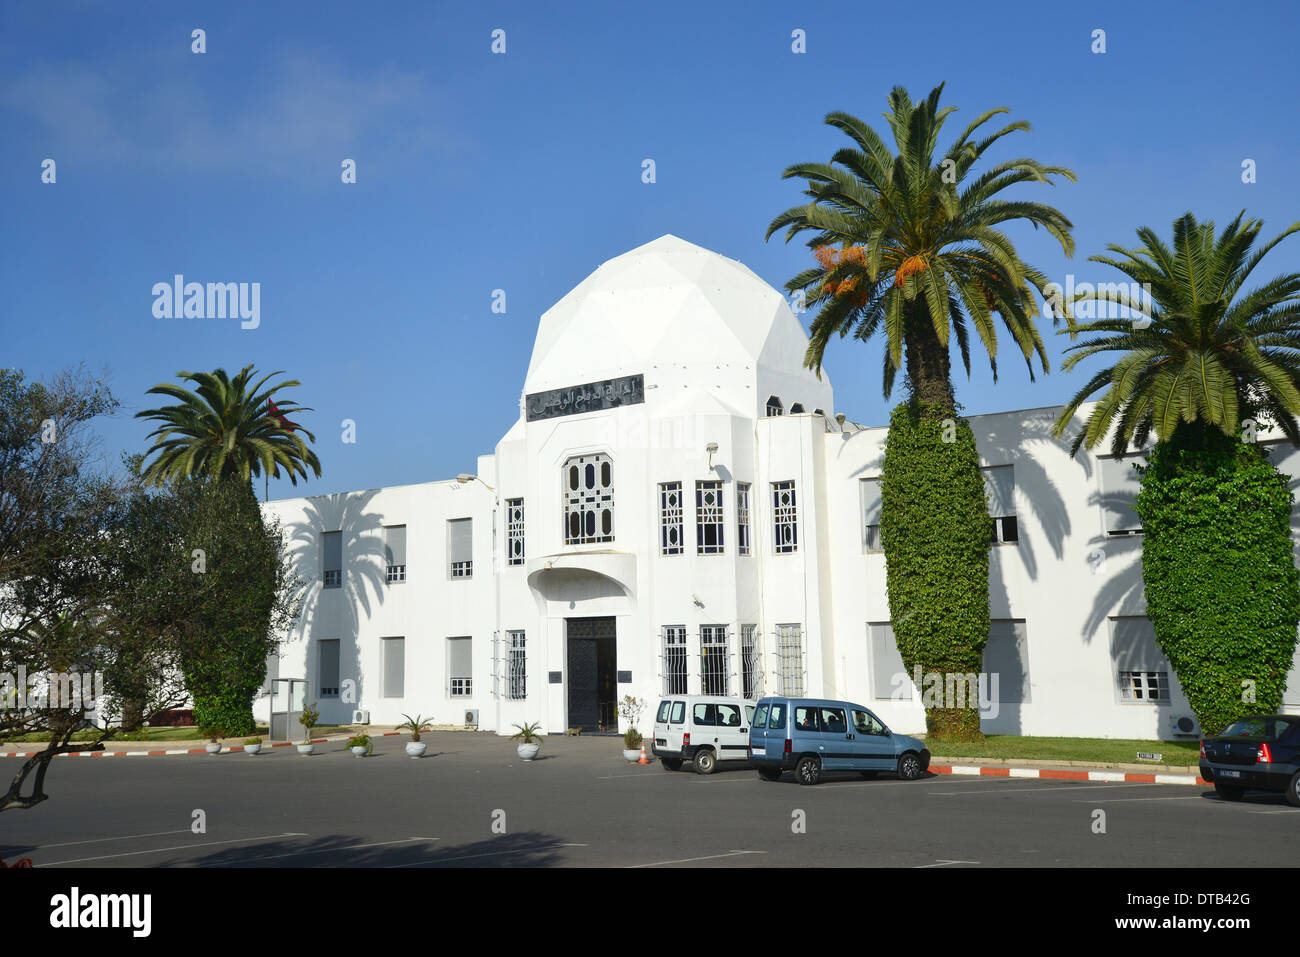 Verteidigung-Abteilung Gebäude, Rabat, Rabat-Salé-Zemmour-Zaer Region, Königreich Marokko Stockfoto